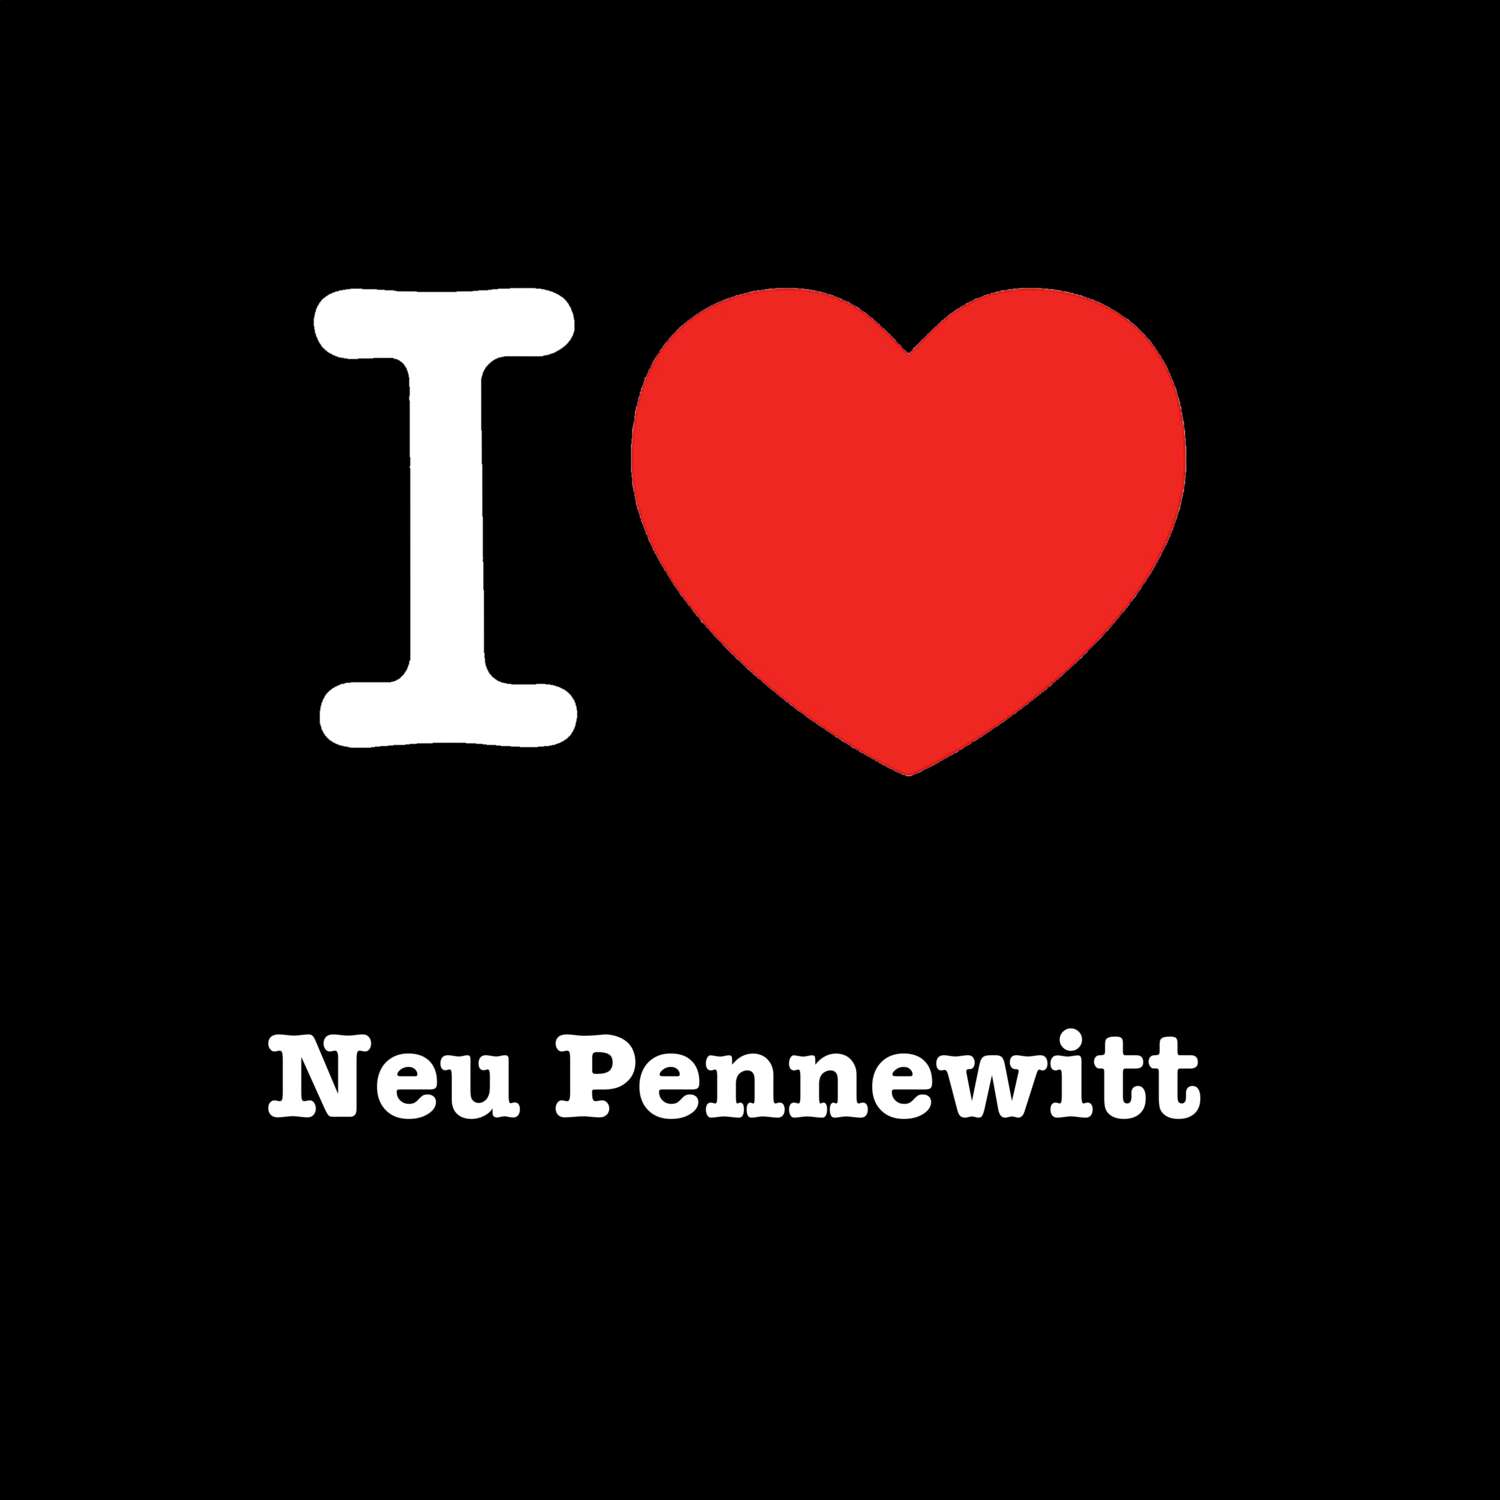 Neu Pennewitt T-Shirt »I love«